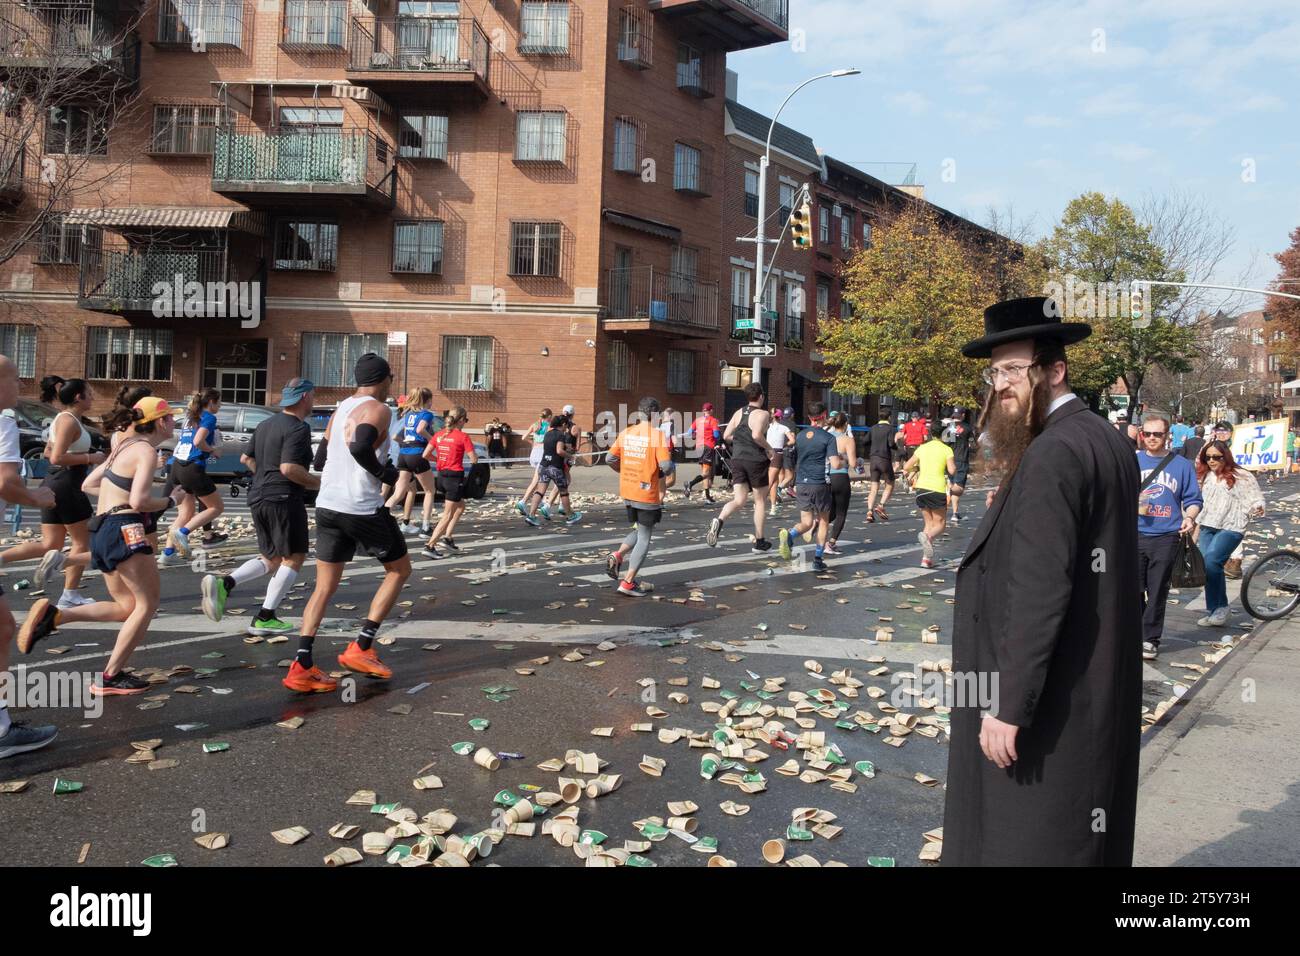 An der 16-Meilen-Marke des NY-Marathons wartet ein orthodoxer jüdischer Mann auf einen Zwischenraum zwischen den Läufern, um die Bedford Avenue zu überqueren. In Williamsburg, Brooklyn, NY. Stockfoto